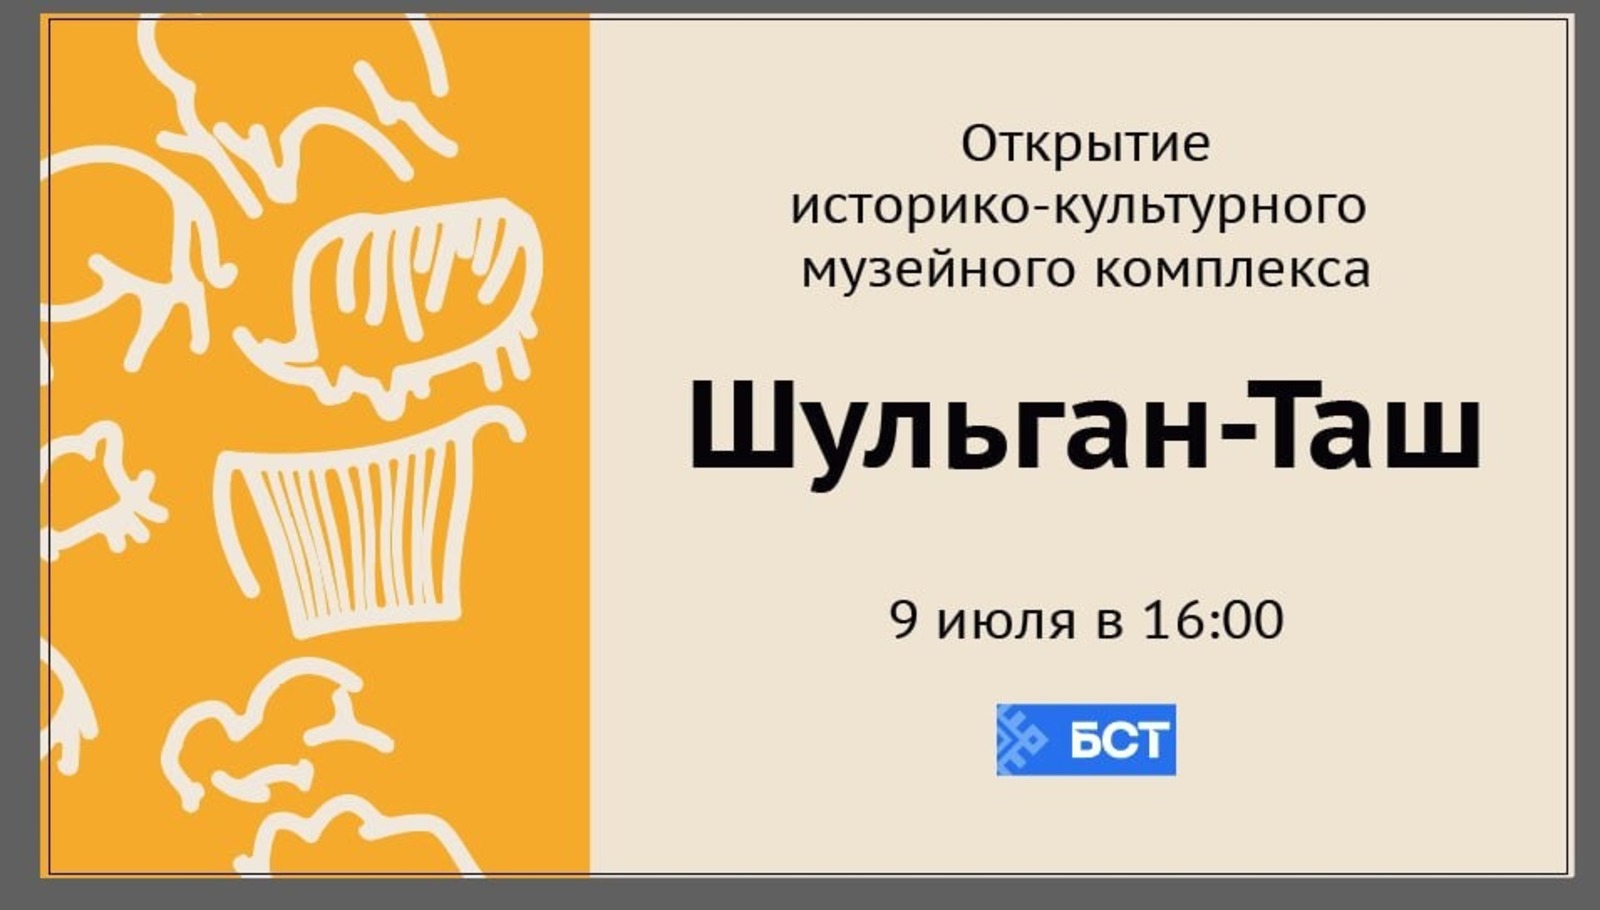 Башкирское телевидение покажет открытие музея «Шульган-Таш»